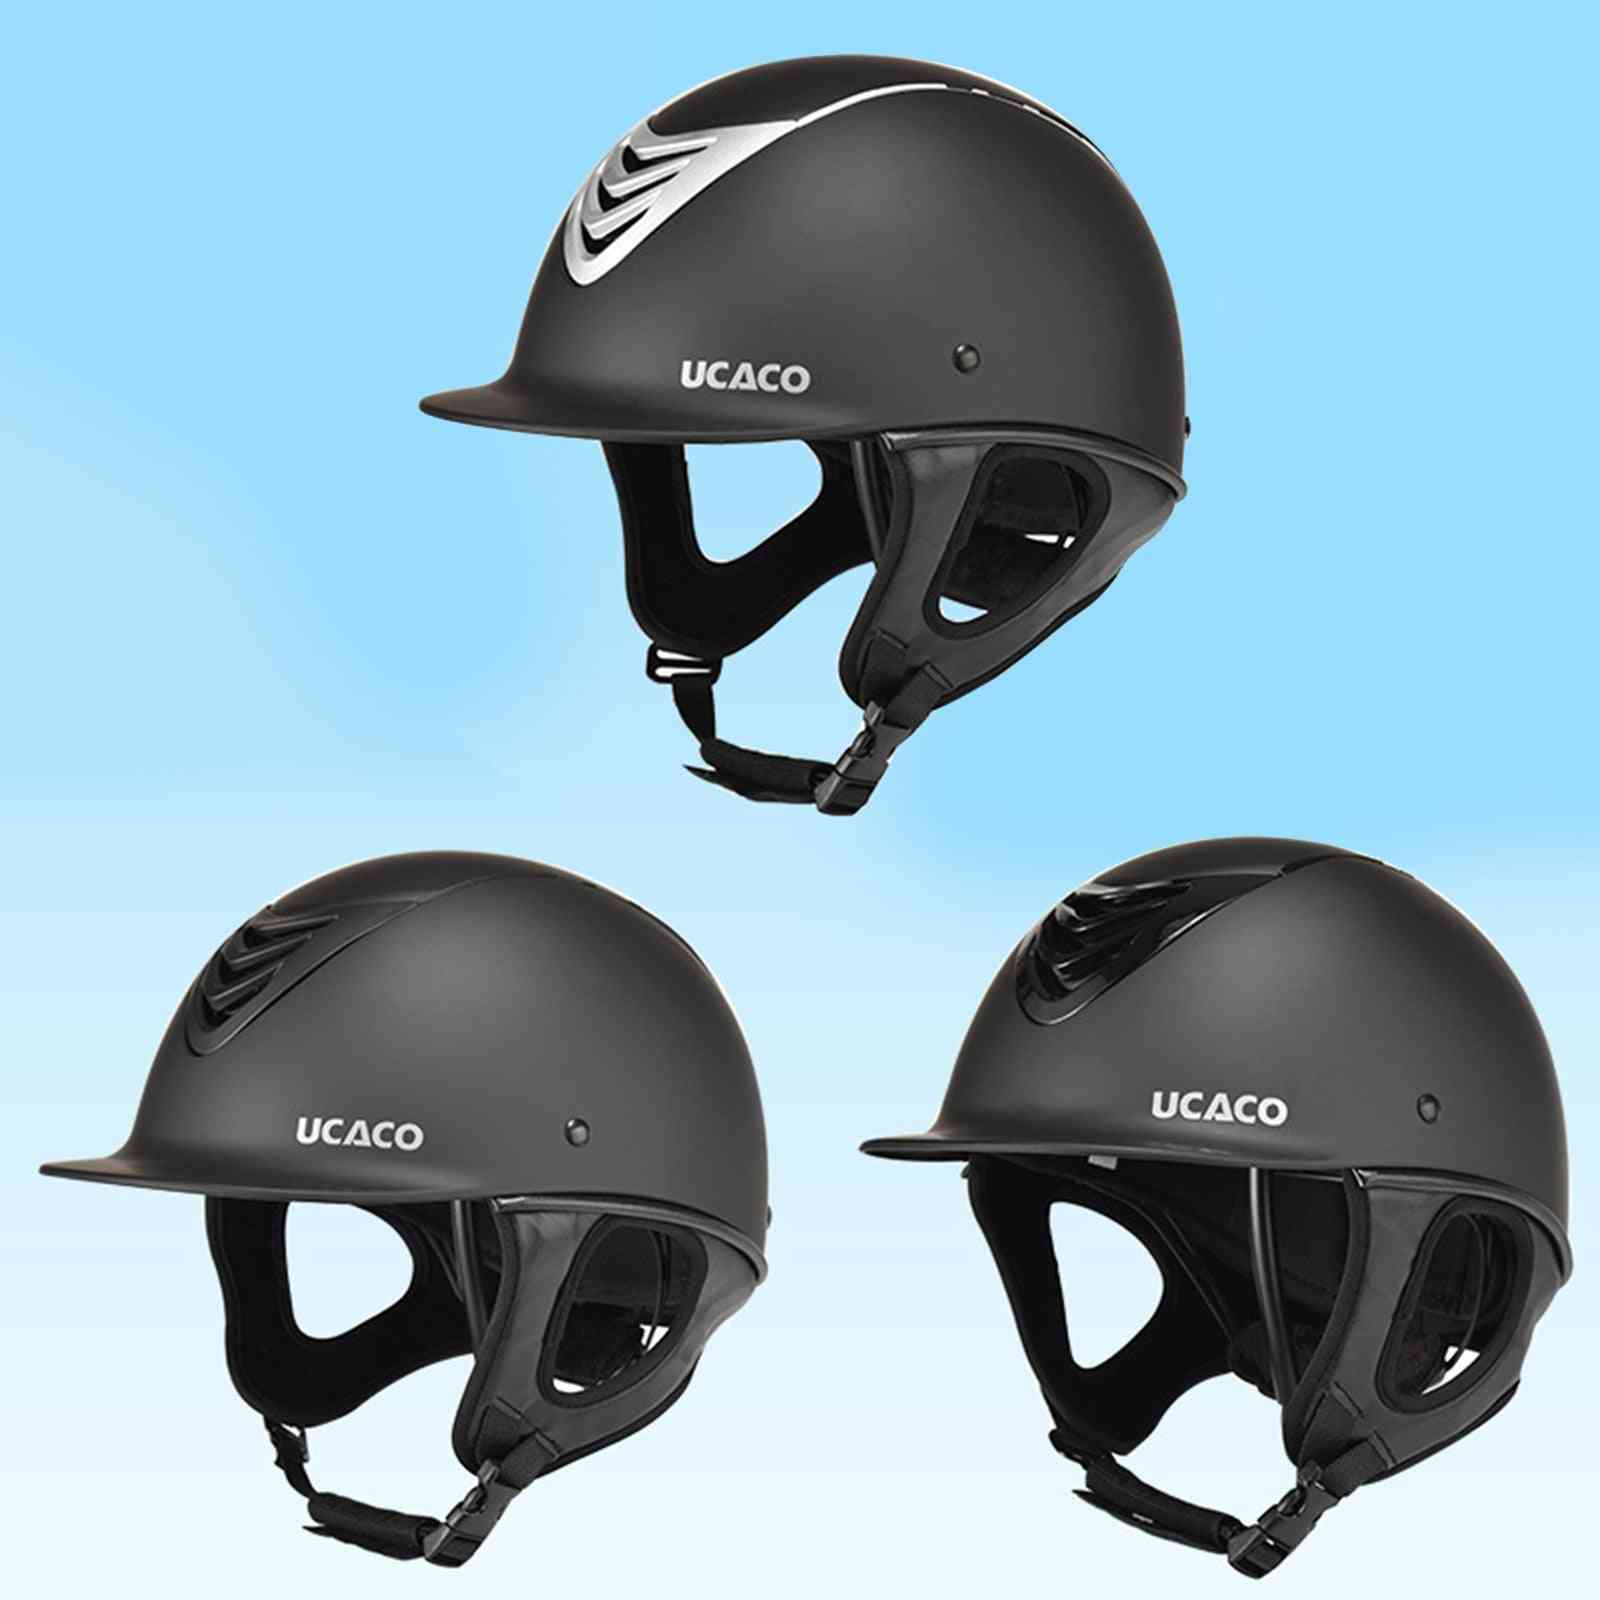 Motorcycle Helmet, Caps - Adjustable Equestrian Helmet